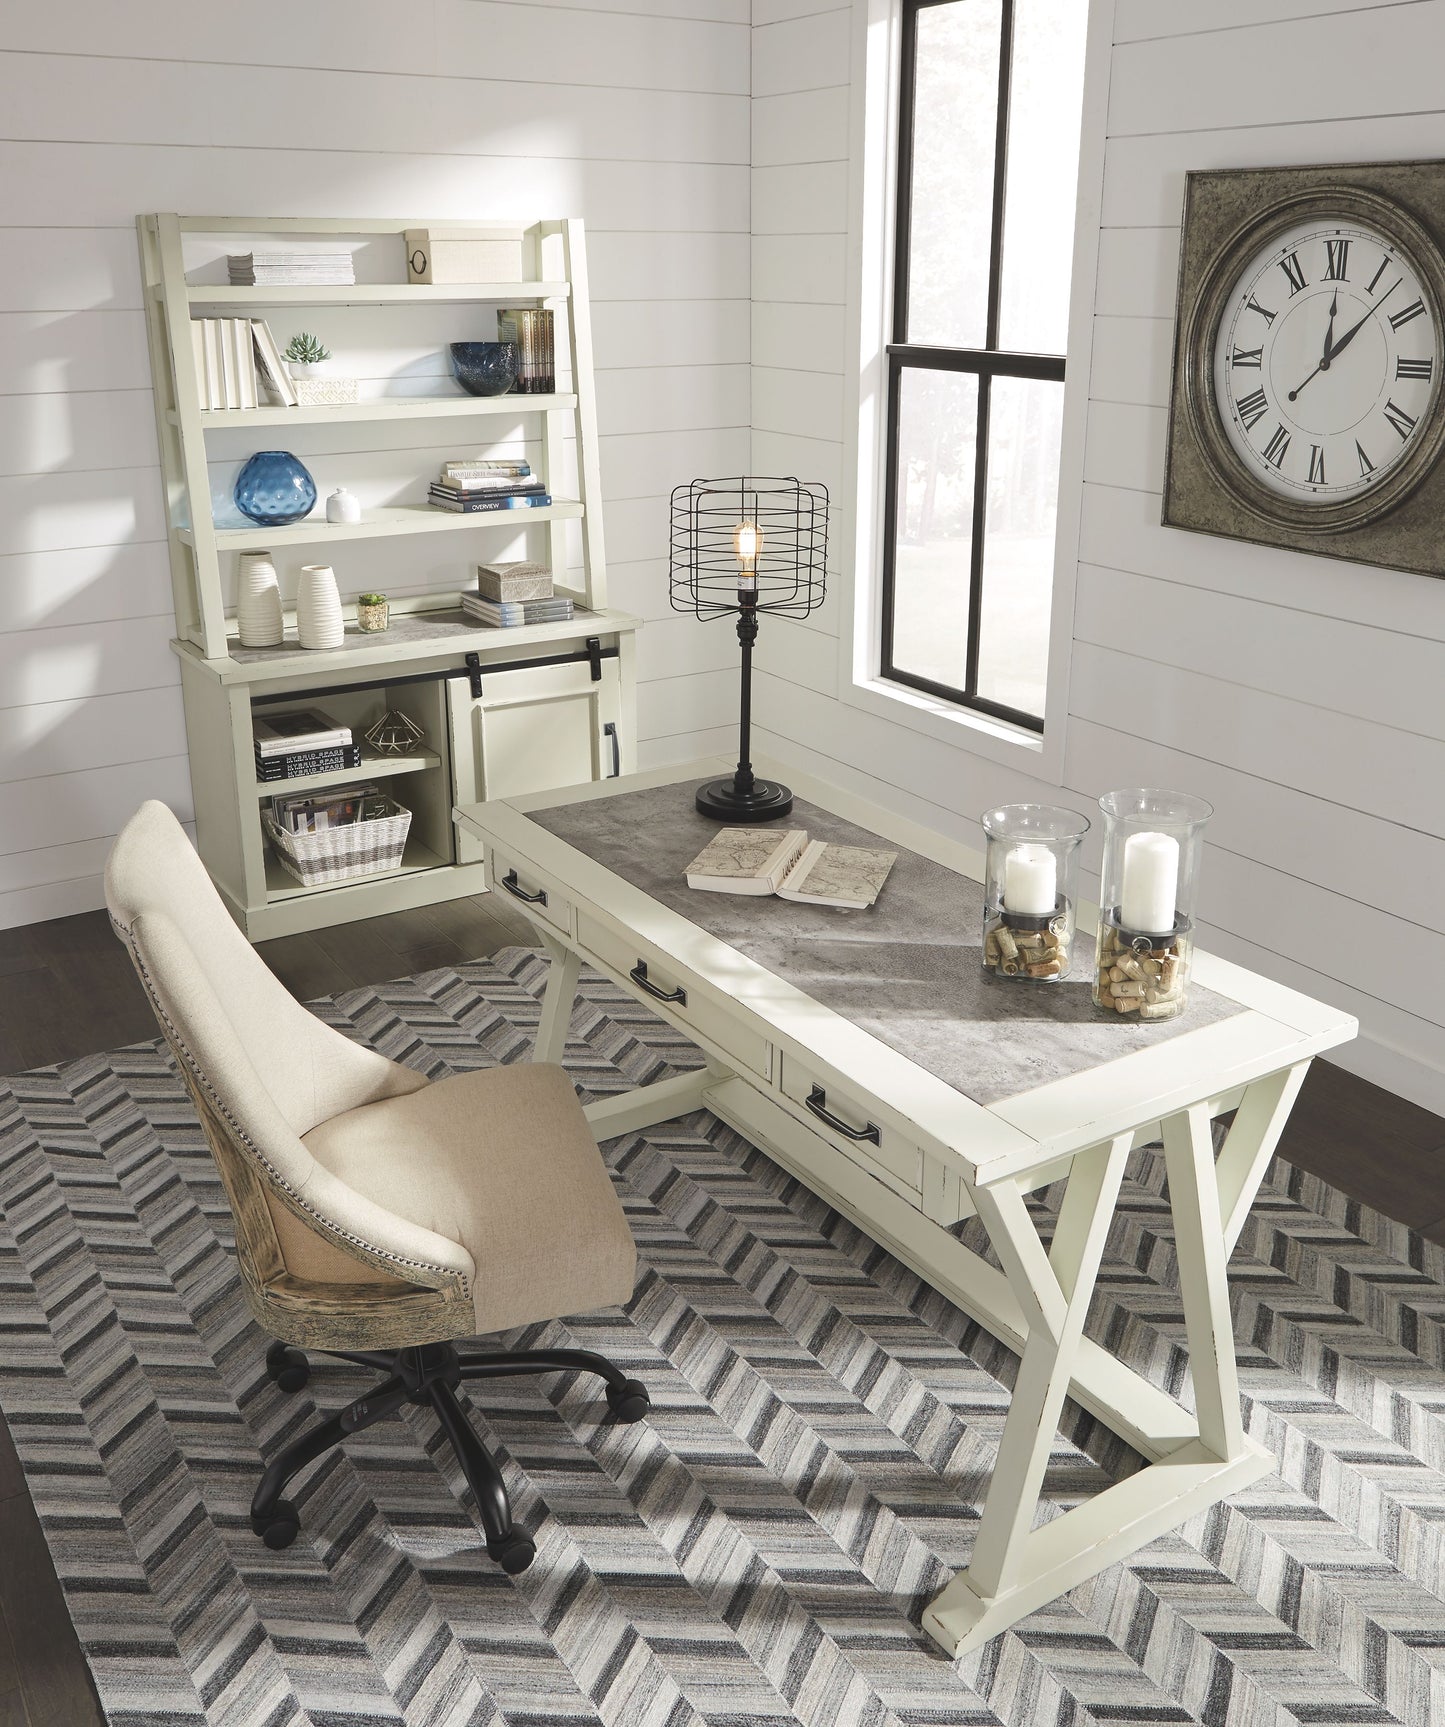 Jonileene - White / Gray - Home Office Large Leg Desk